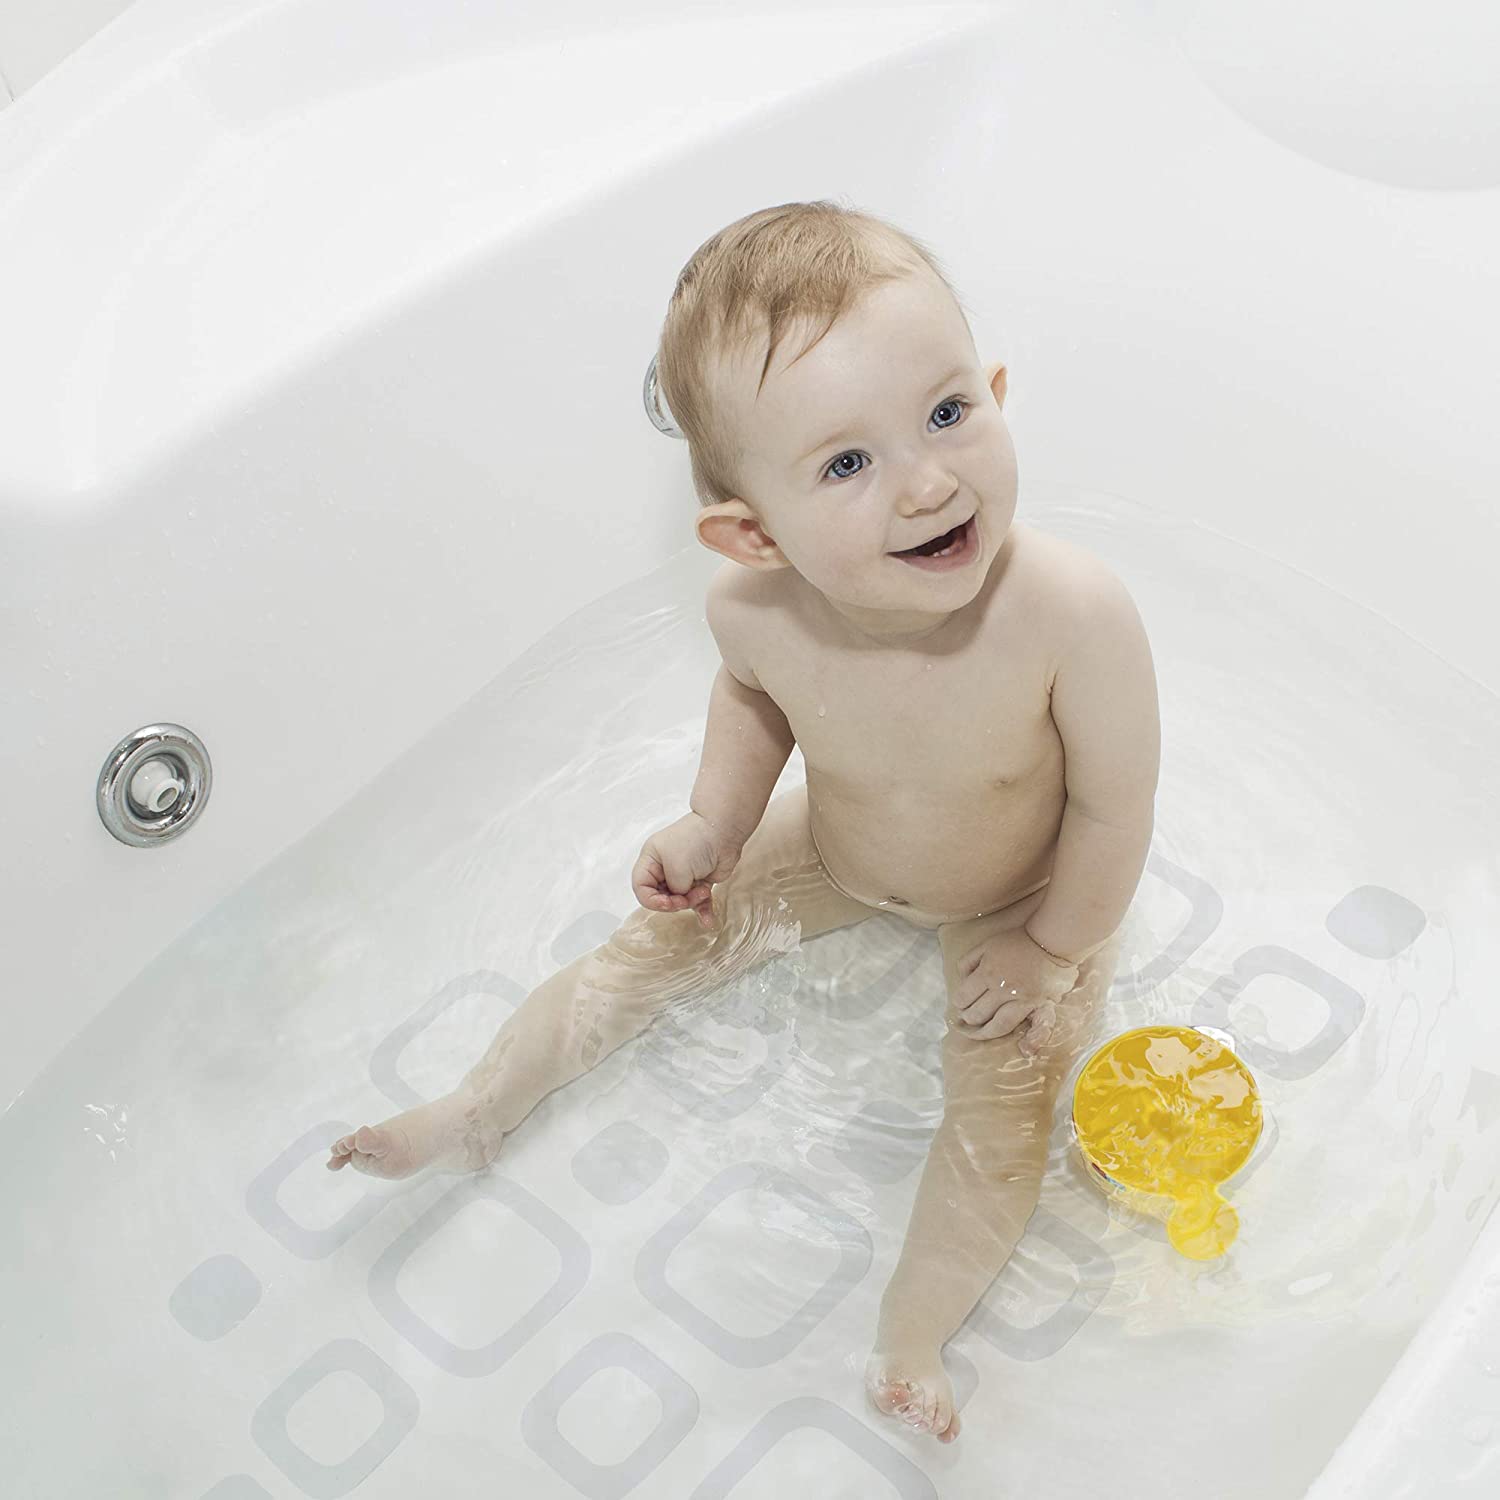 24 Anti-Rutsch Pads für Badewanne/Dusche - Quadratisch